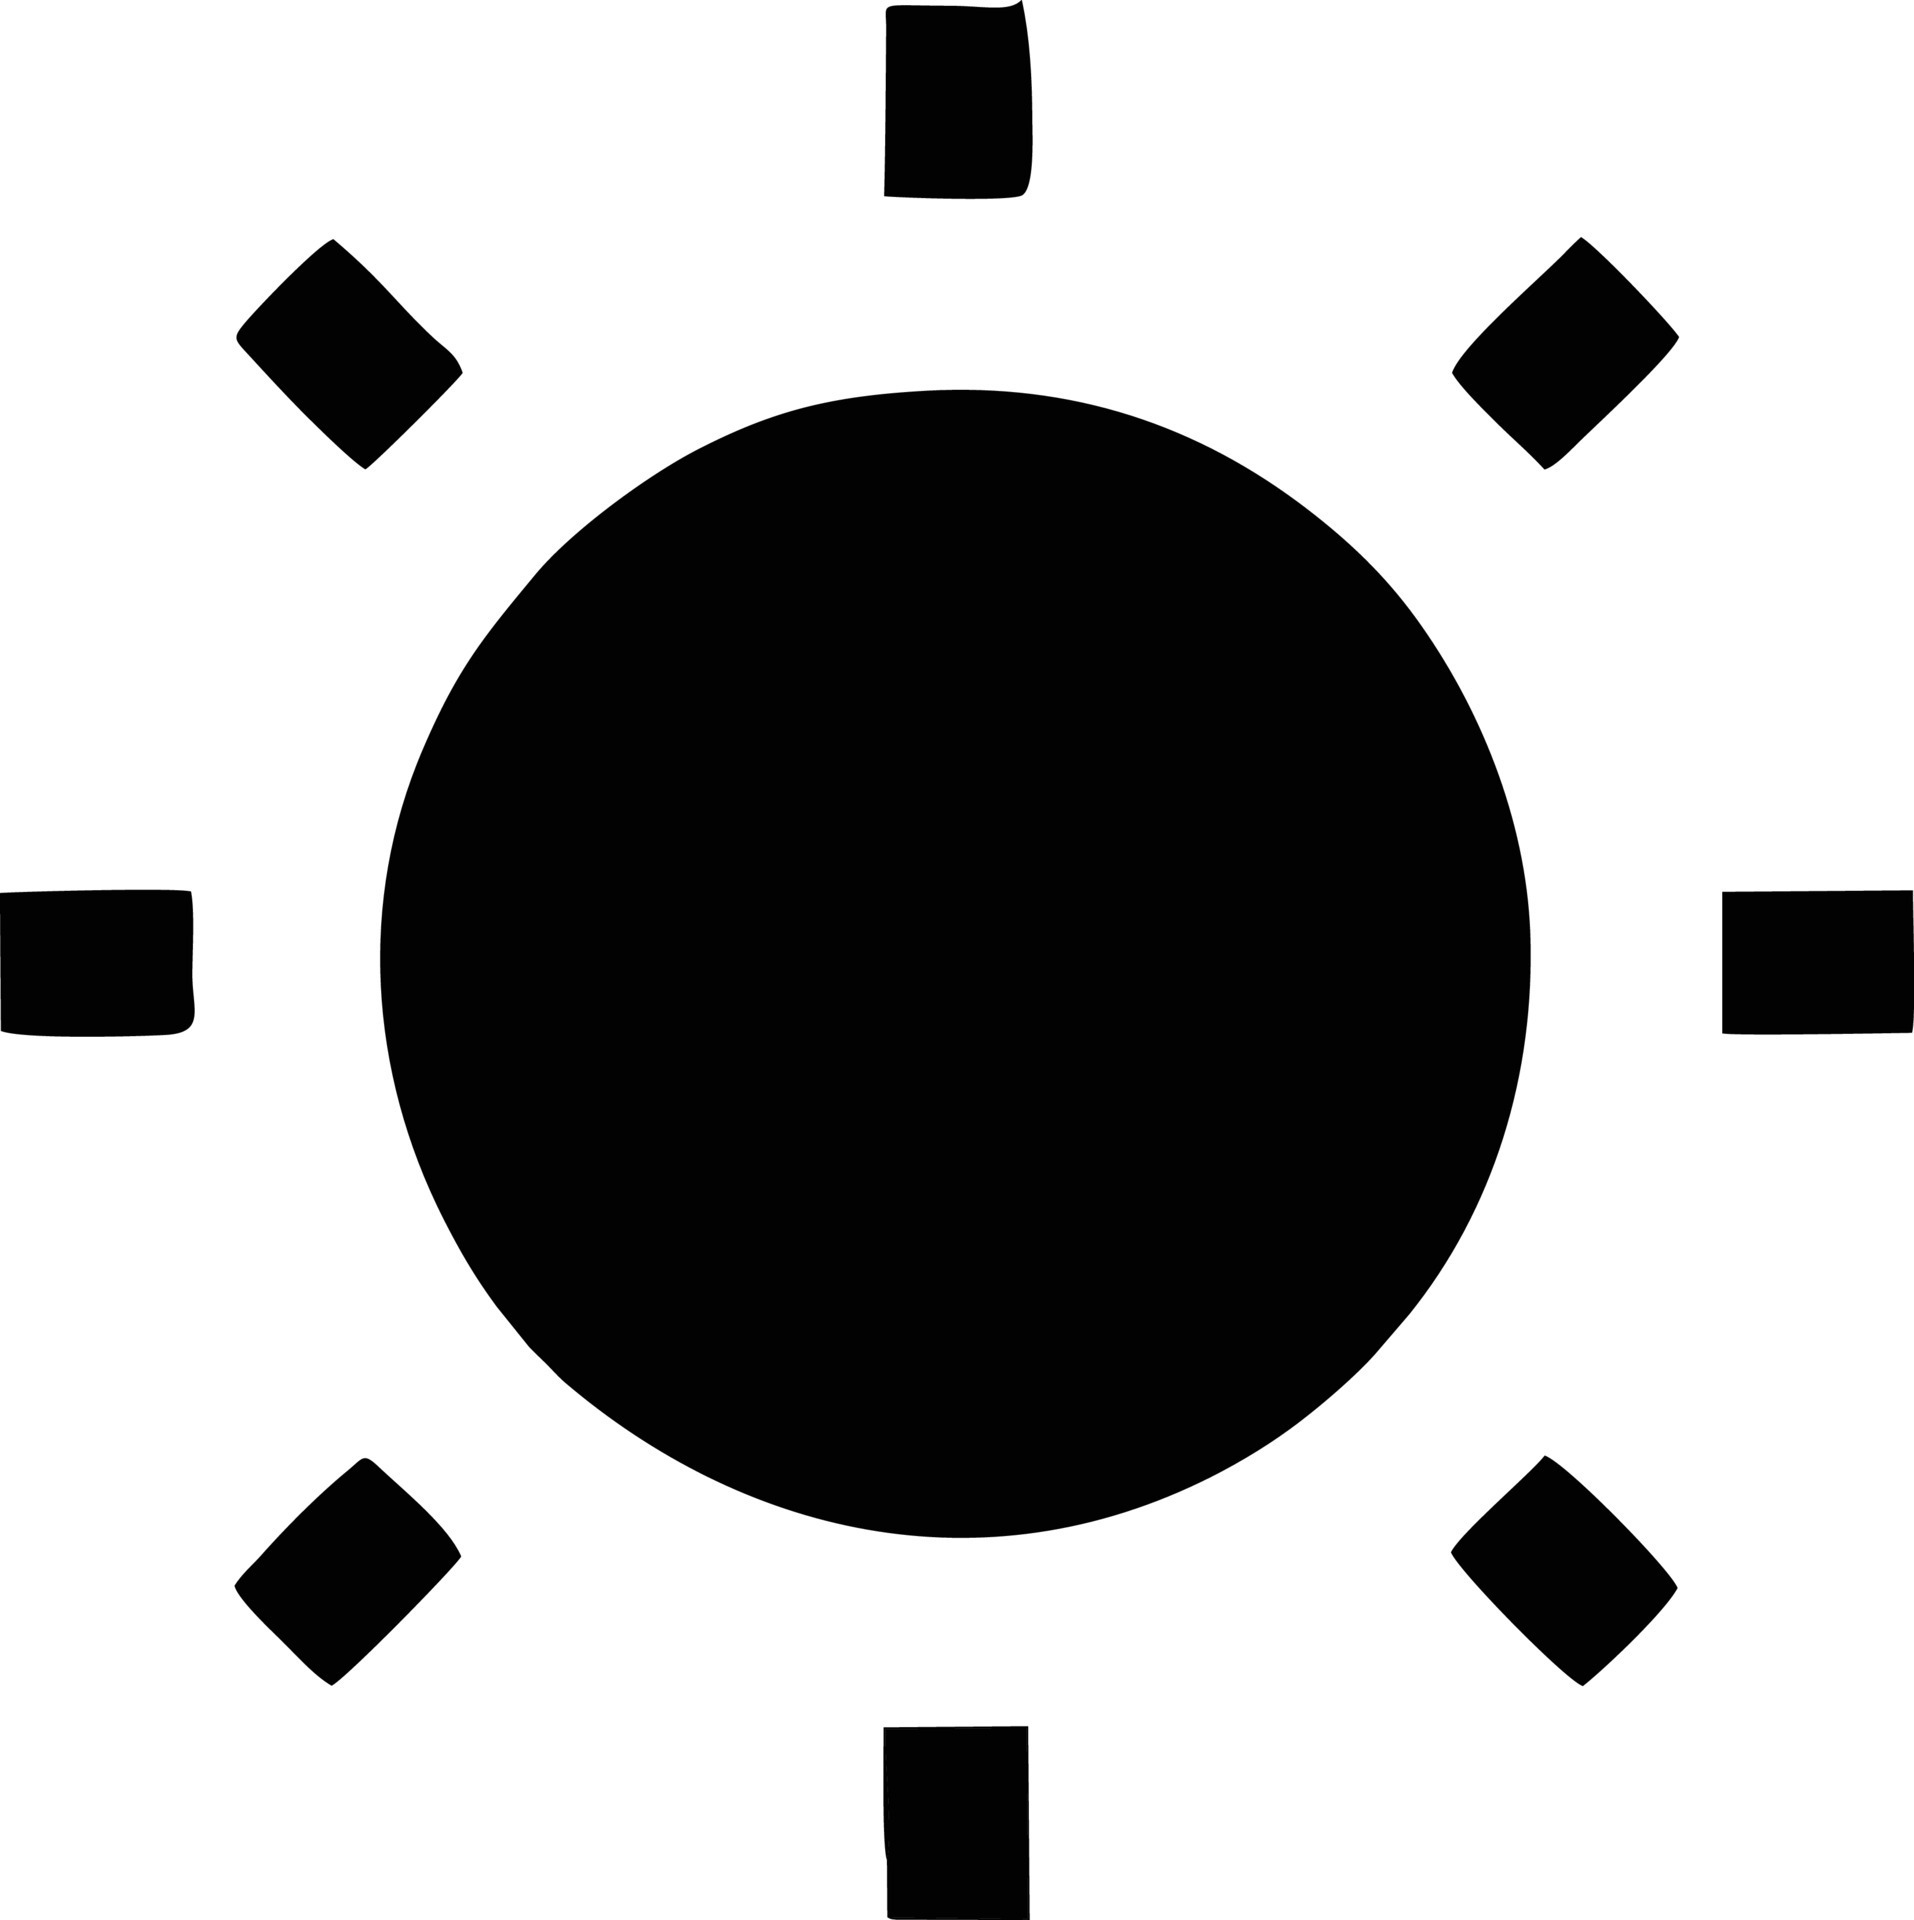 sun icon in white background, illustration of sun icon symbol in black ...